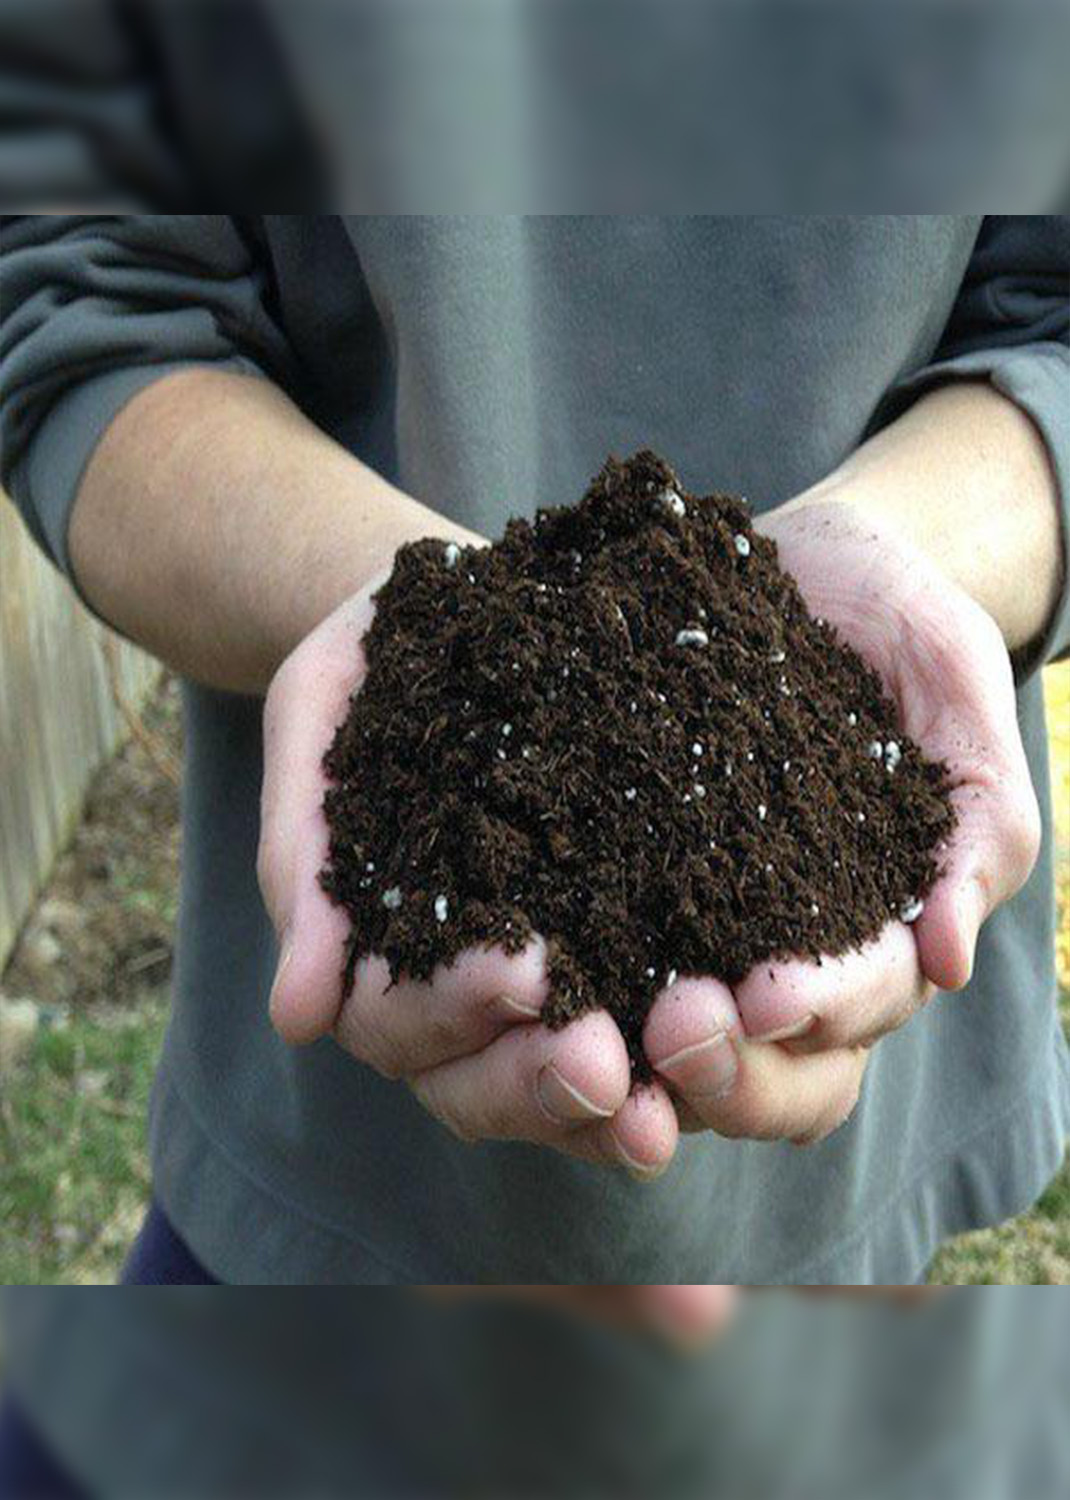 GARDENER’S Planting Mix Potting Soil